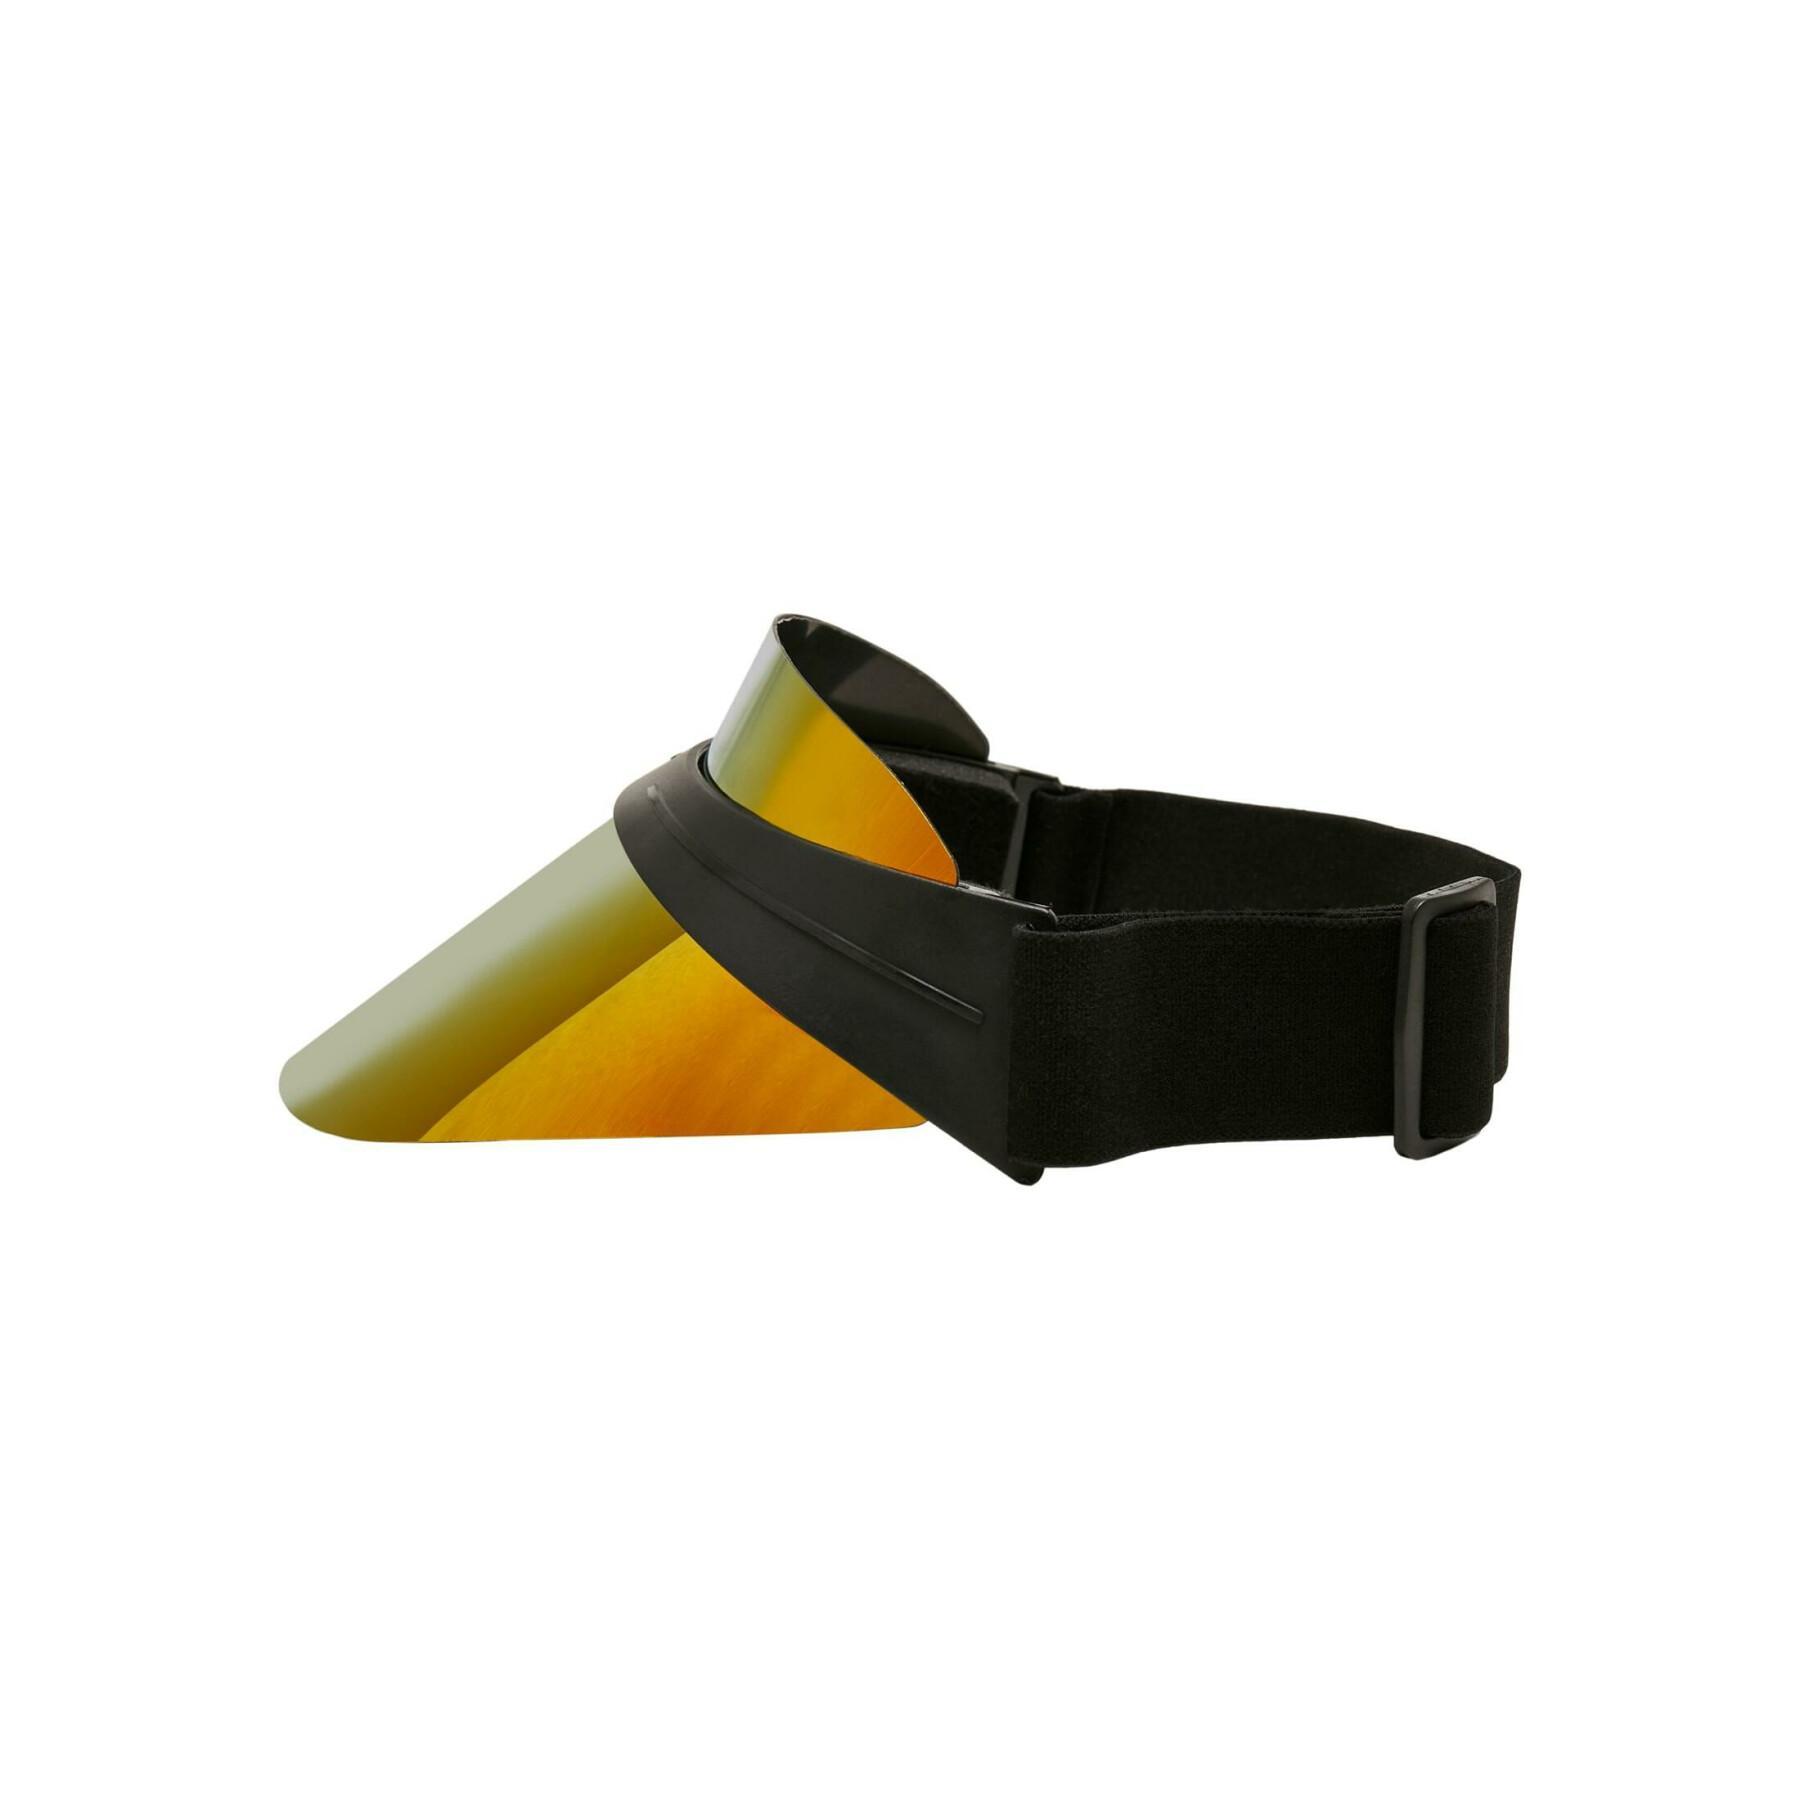 Plastic visor Urban Classics Cool - Accessories - Equipment - Running